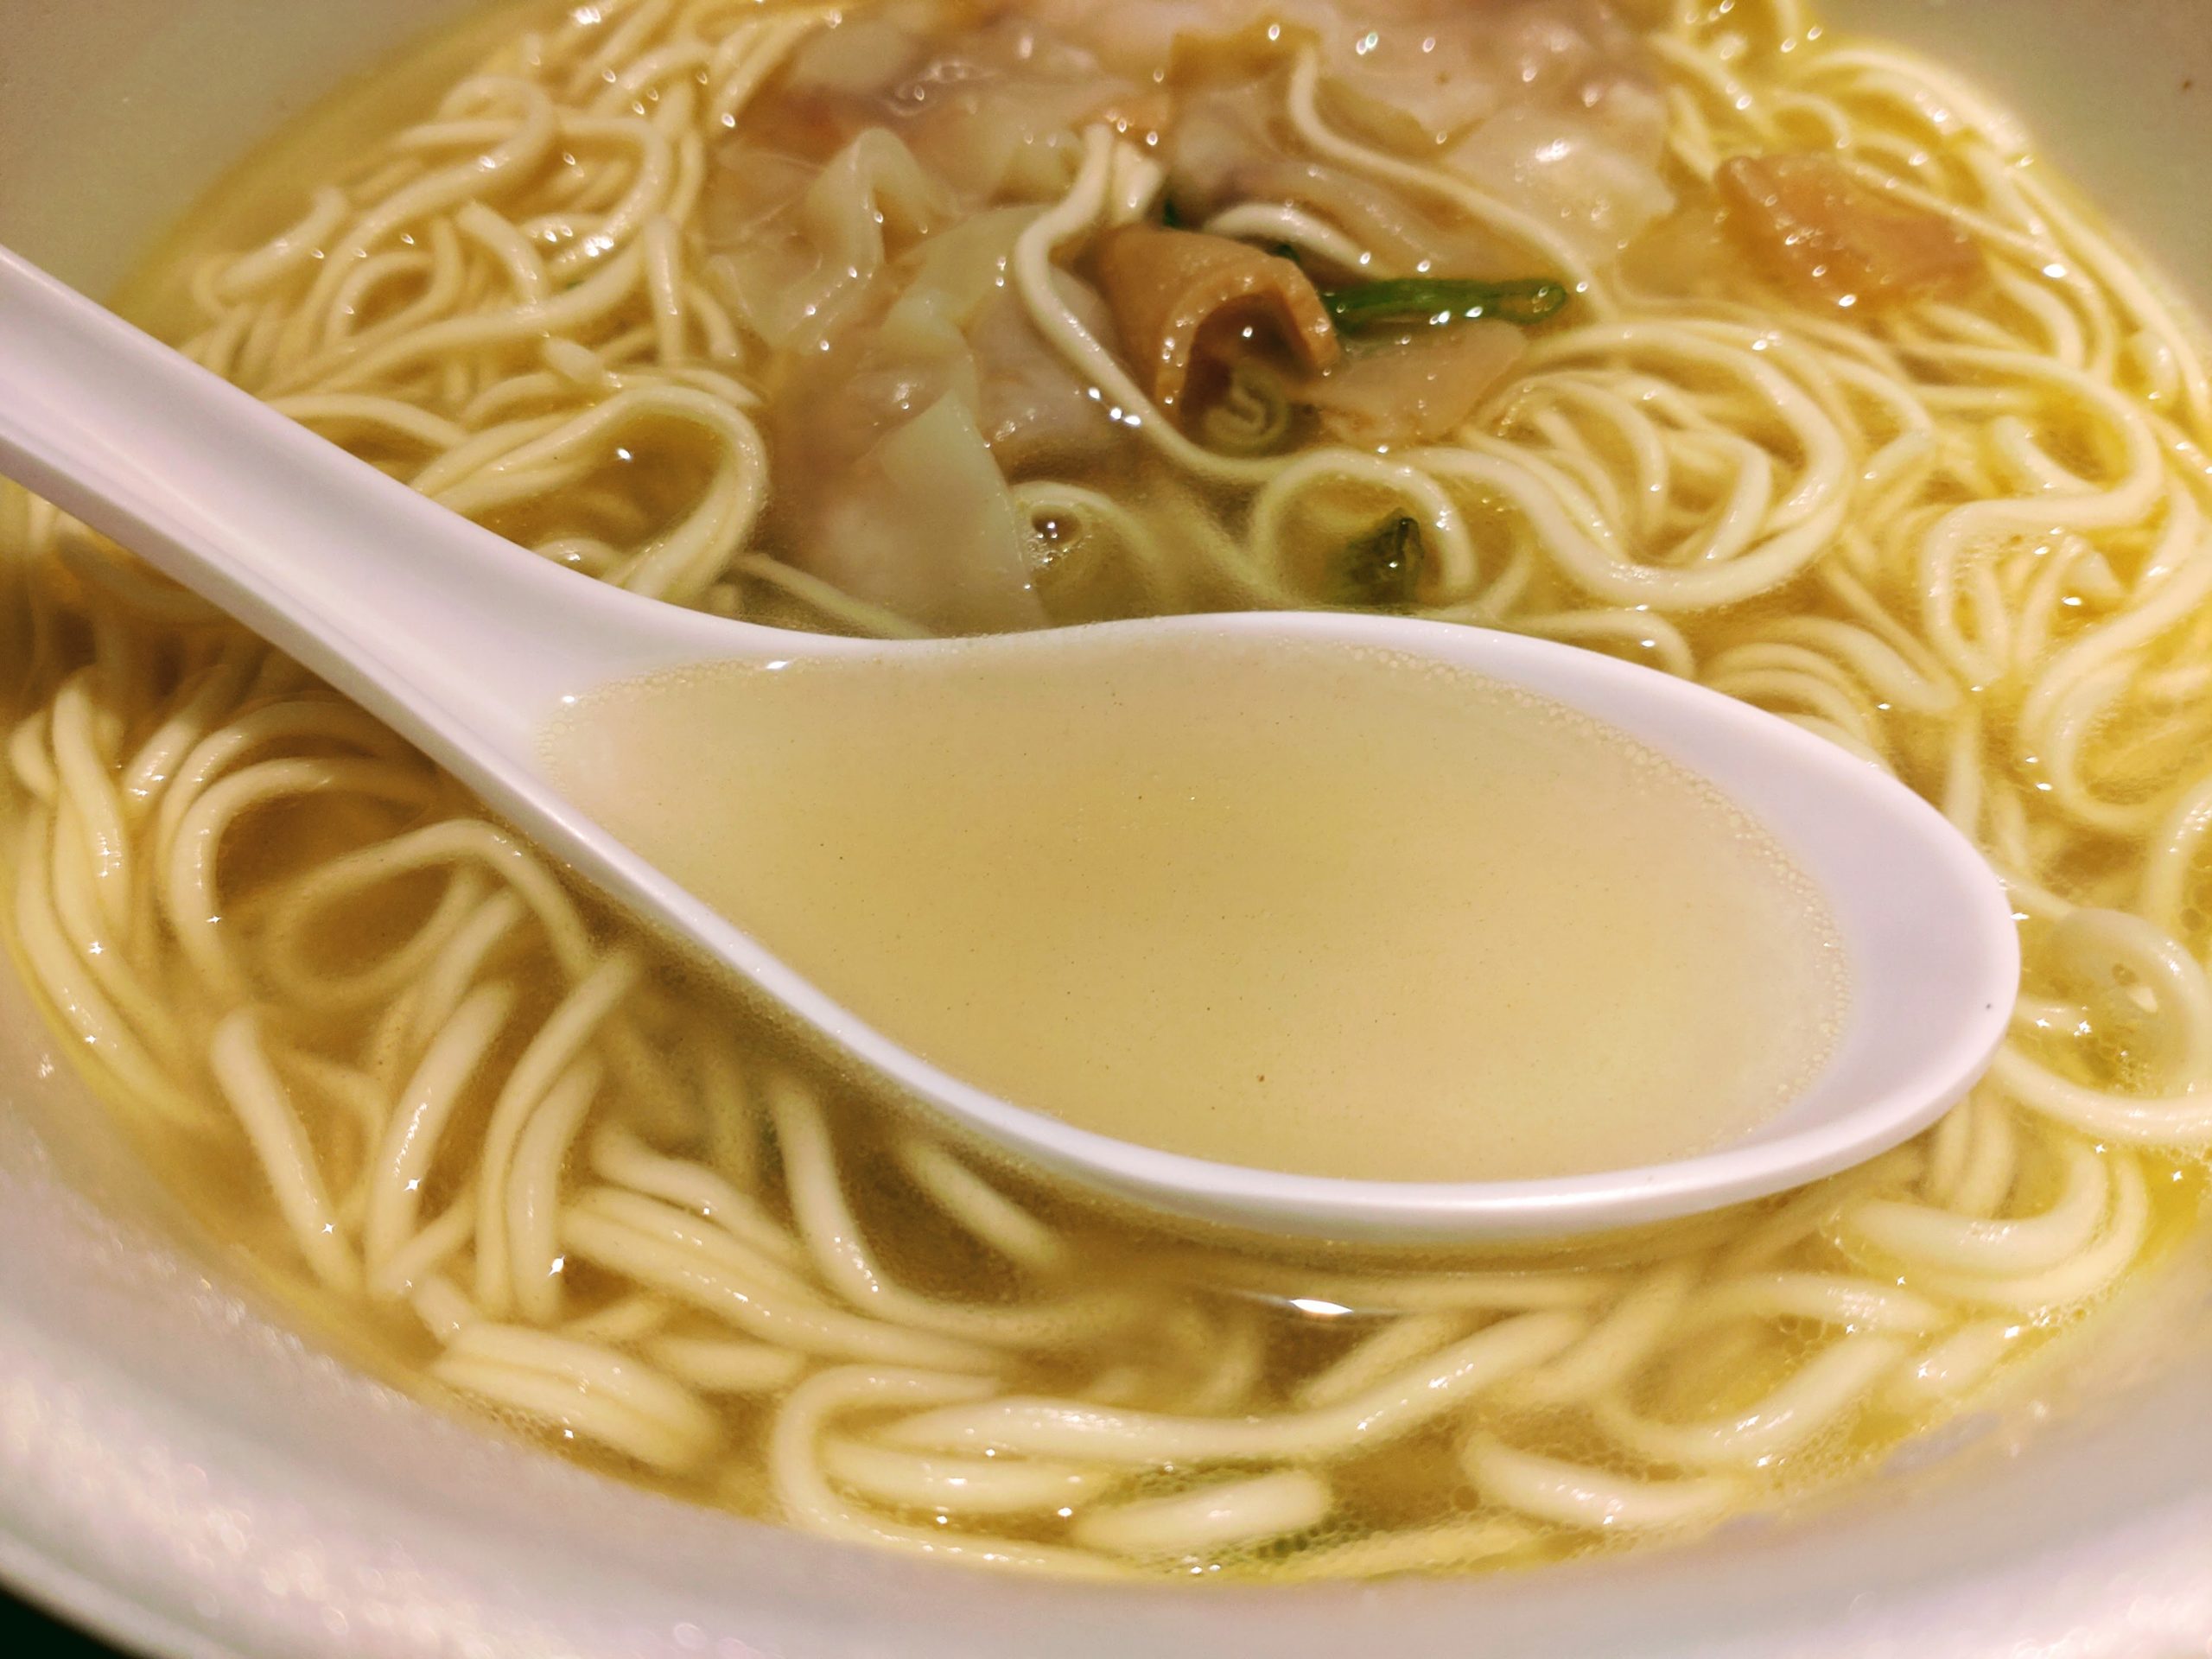 ワンタン麺の最高峰の店 八雲の一杯 ワンタン麺 白醤油味のスープ